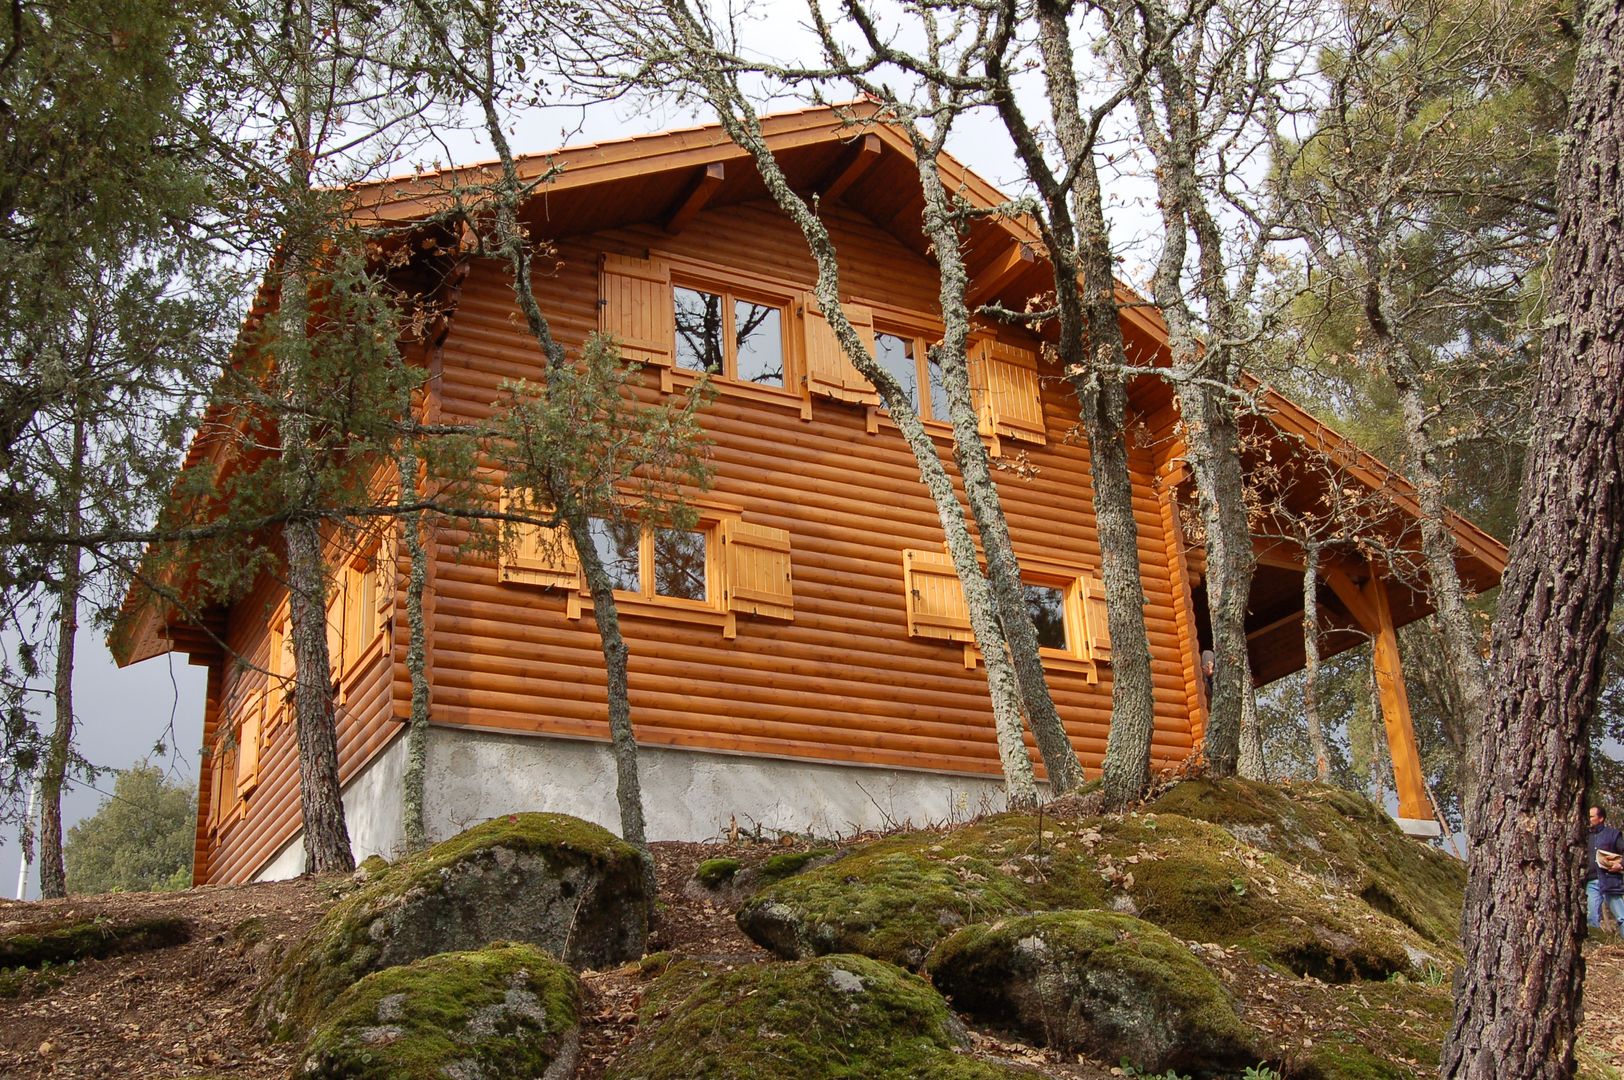 RUSTICASA | 100 projetos | Portugal + Espanha, RUSTICASA RUSTICASA Wooden houses Solid Wood Multicolored